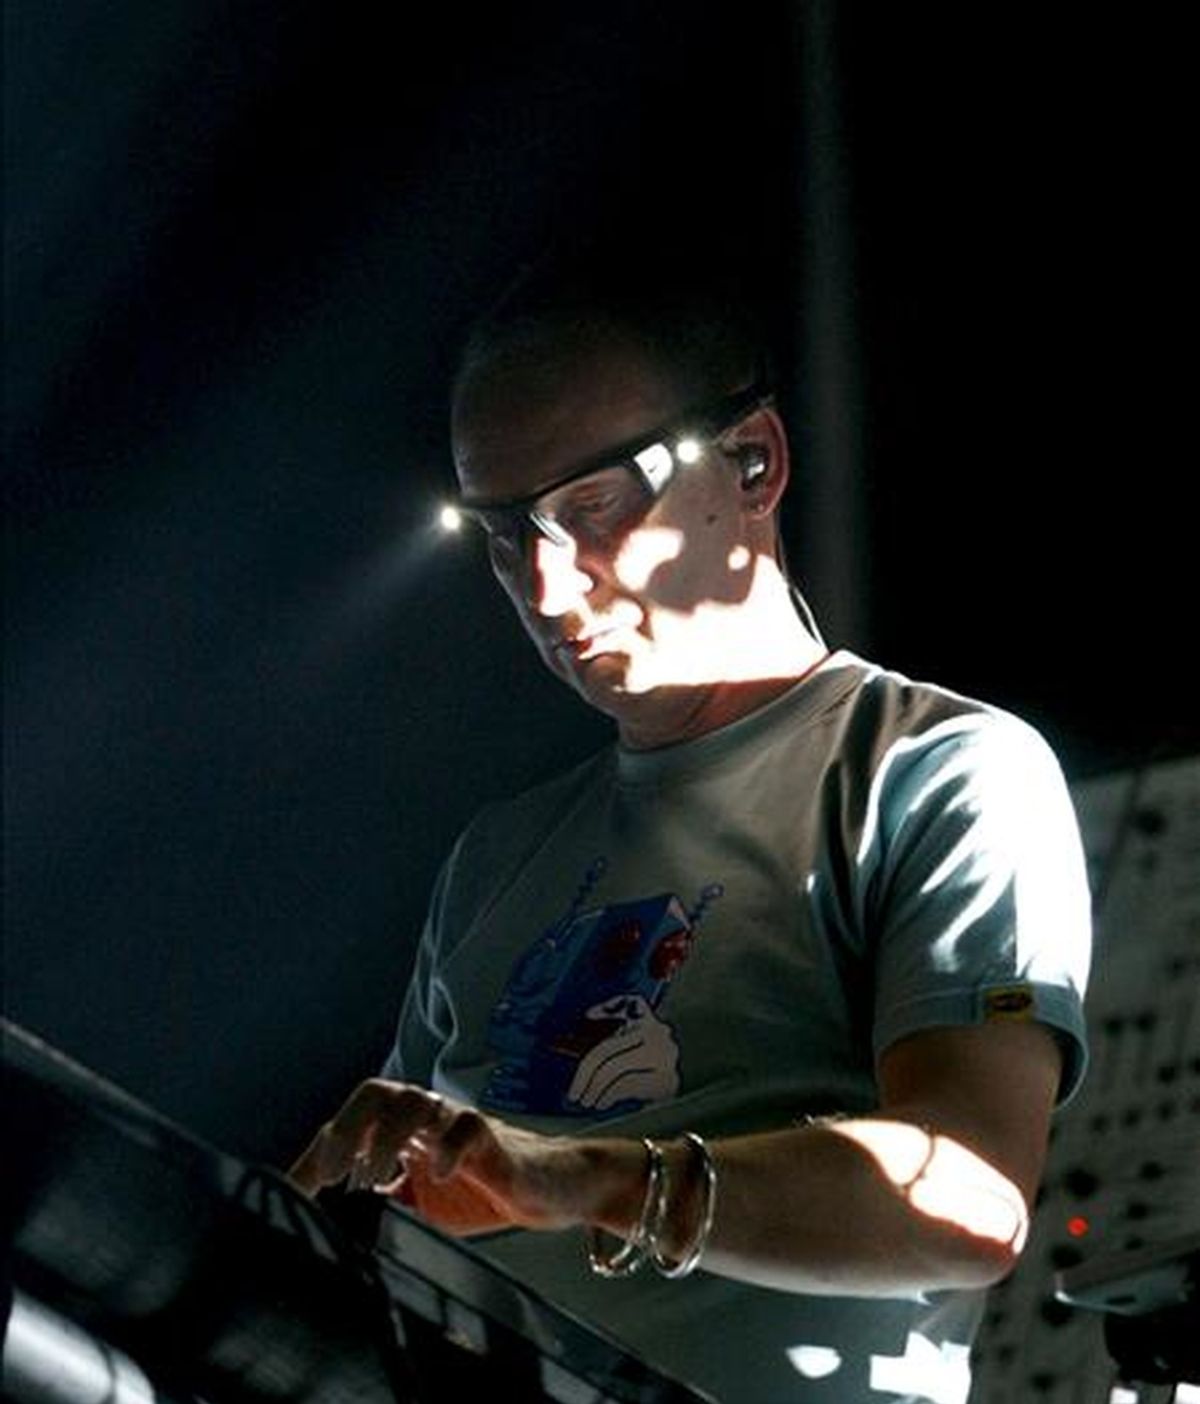 Uno de los integrantes del grupo de música Techno y Breakbeat inglés, Orbital, durante su actuación anoche en el Sónar 2009, Festival internacional de música avanzada y arte multimedia de Barcelona. EFE